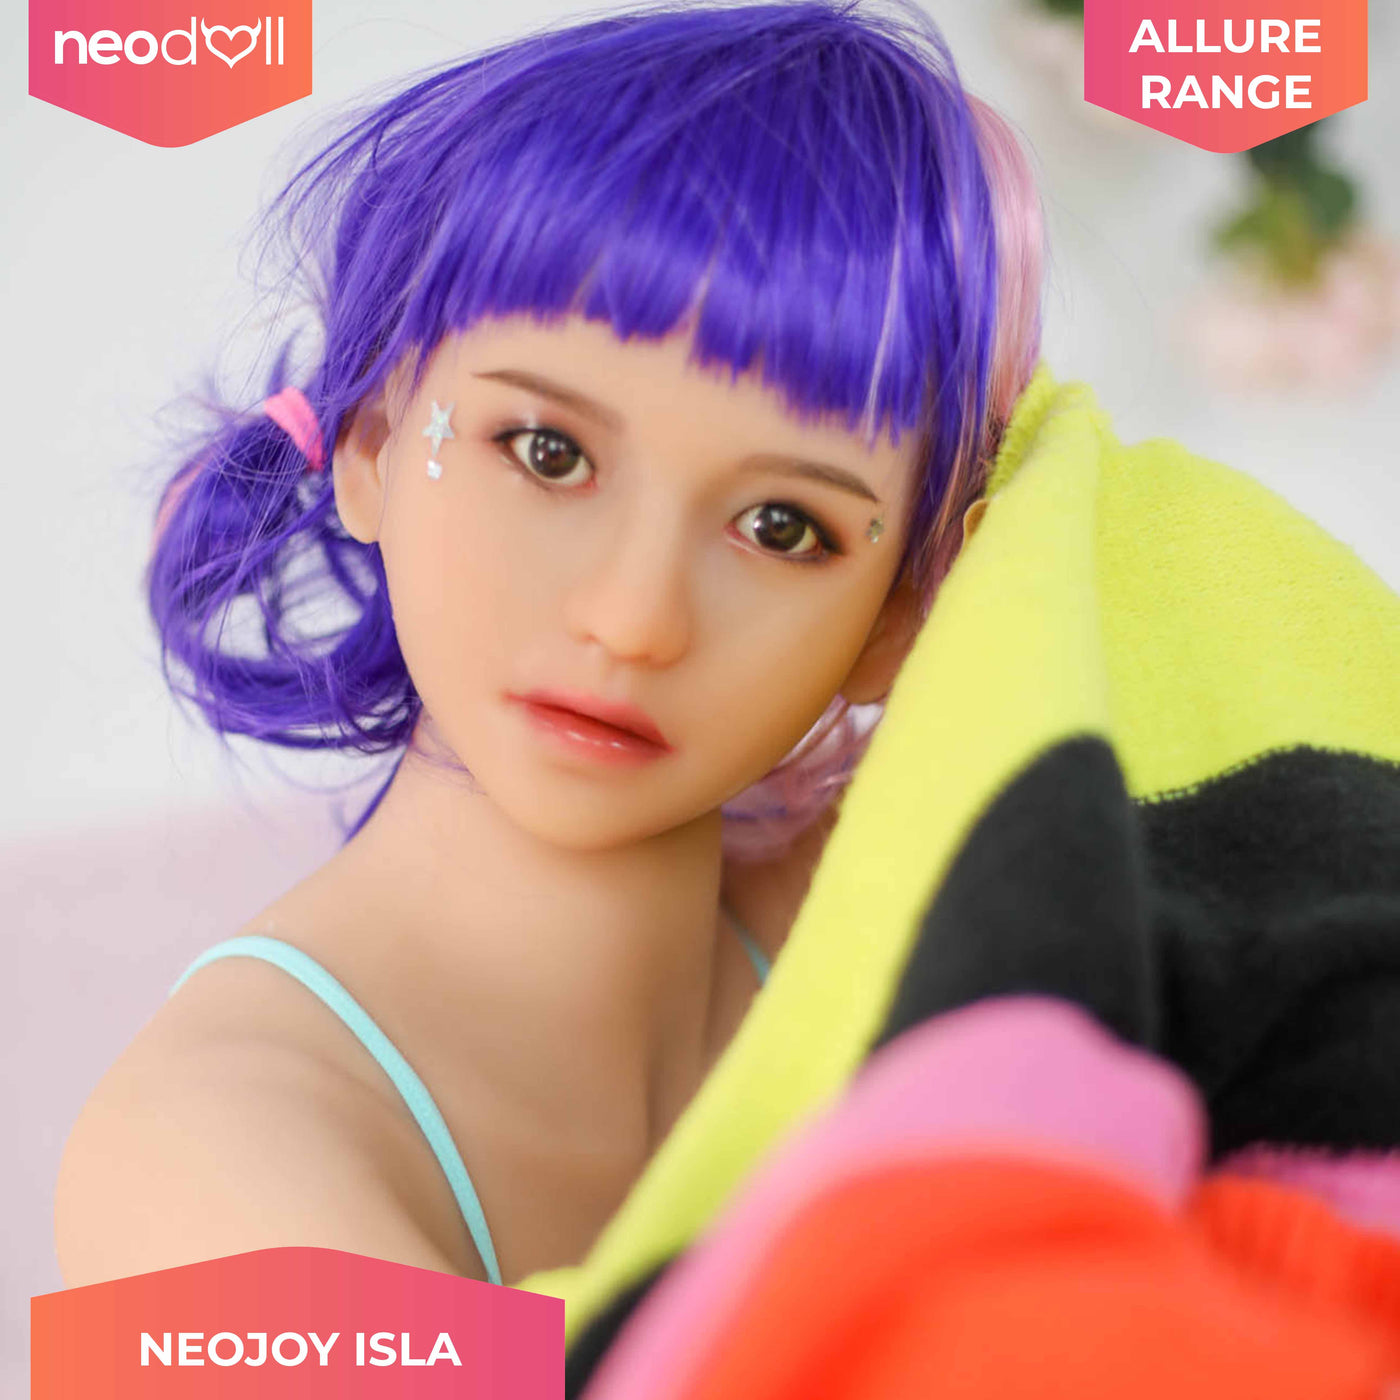 Neodoll Allure - Isla - Silicone TPE Hybrid Sex Doll - 166cm - Tan